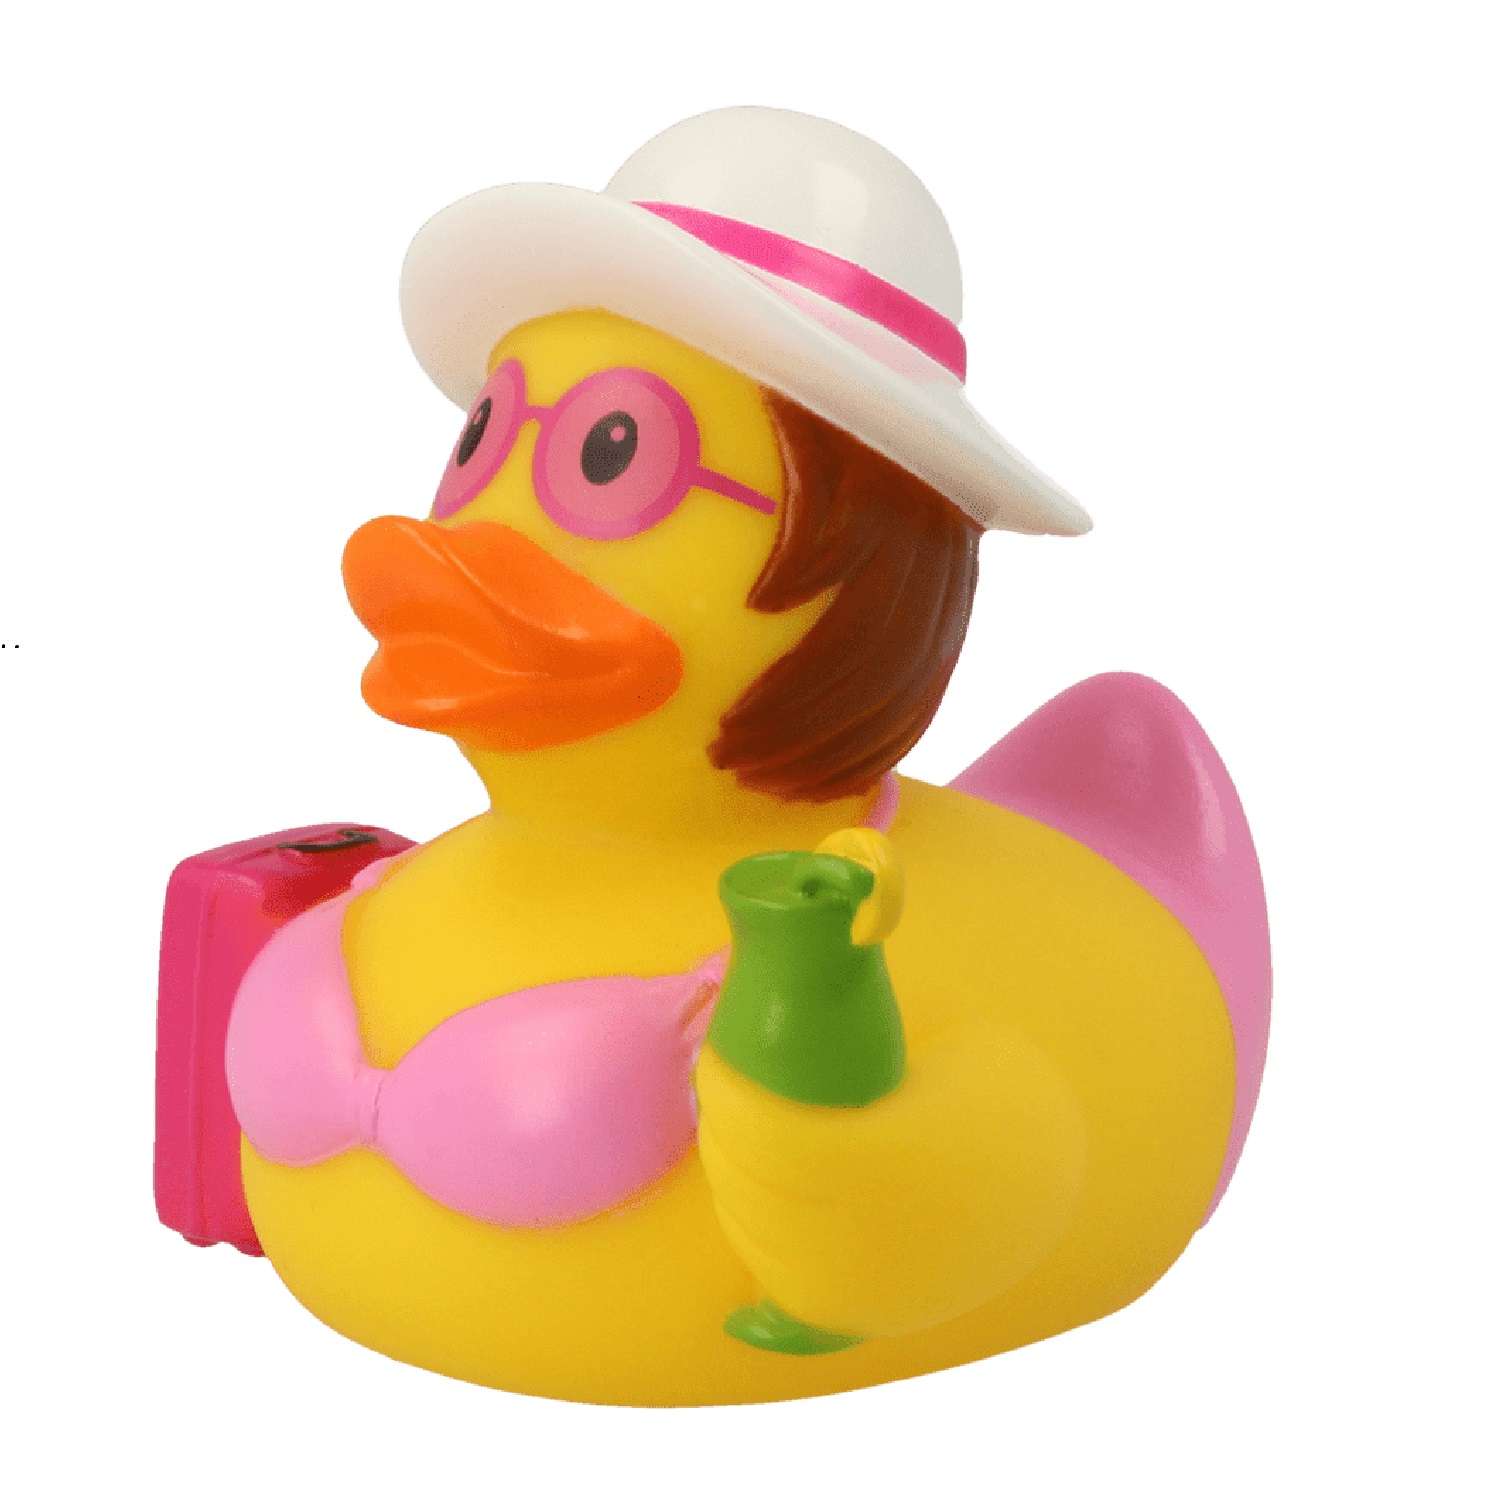 Игрушка Funny ducks для ванной Пляжница уточка 1259 - фото 1